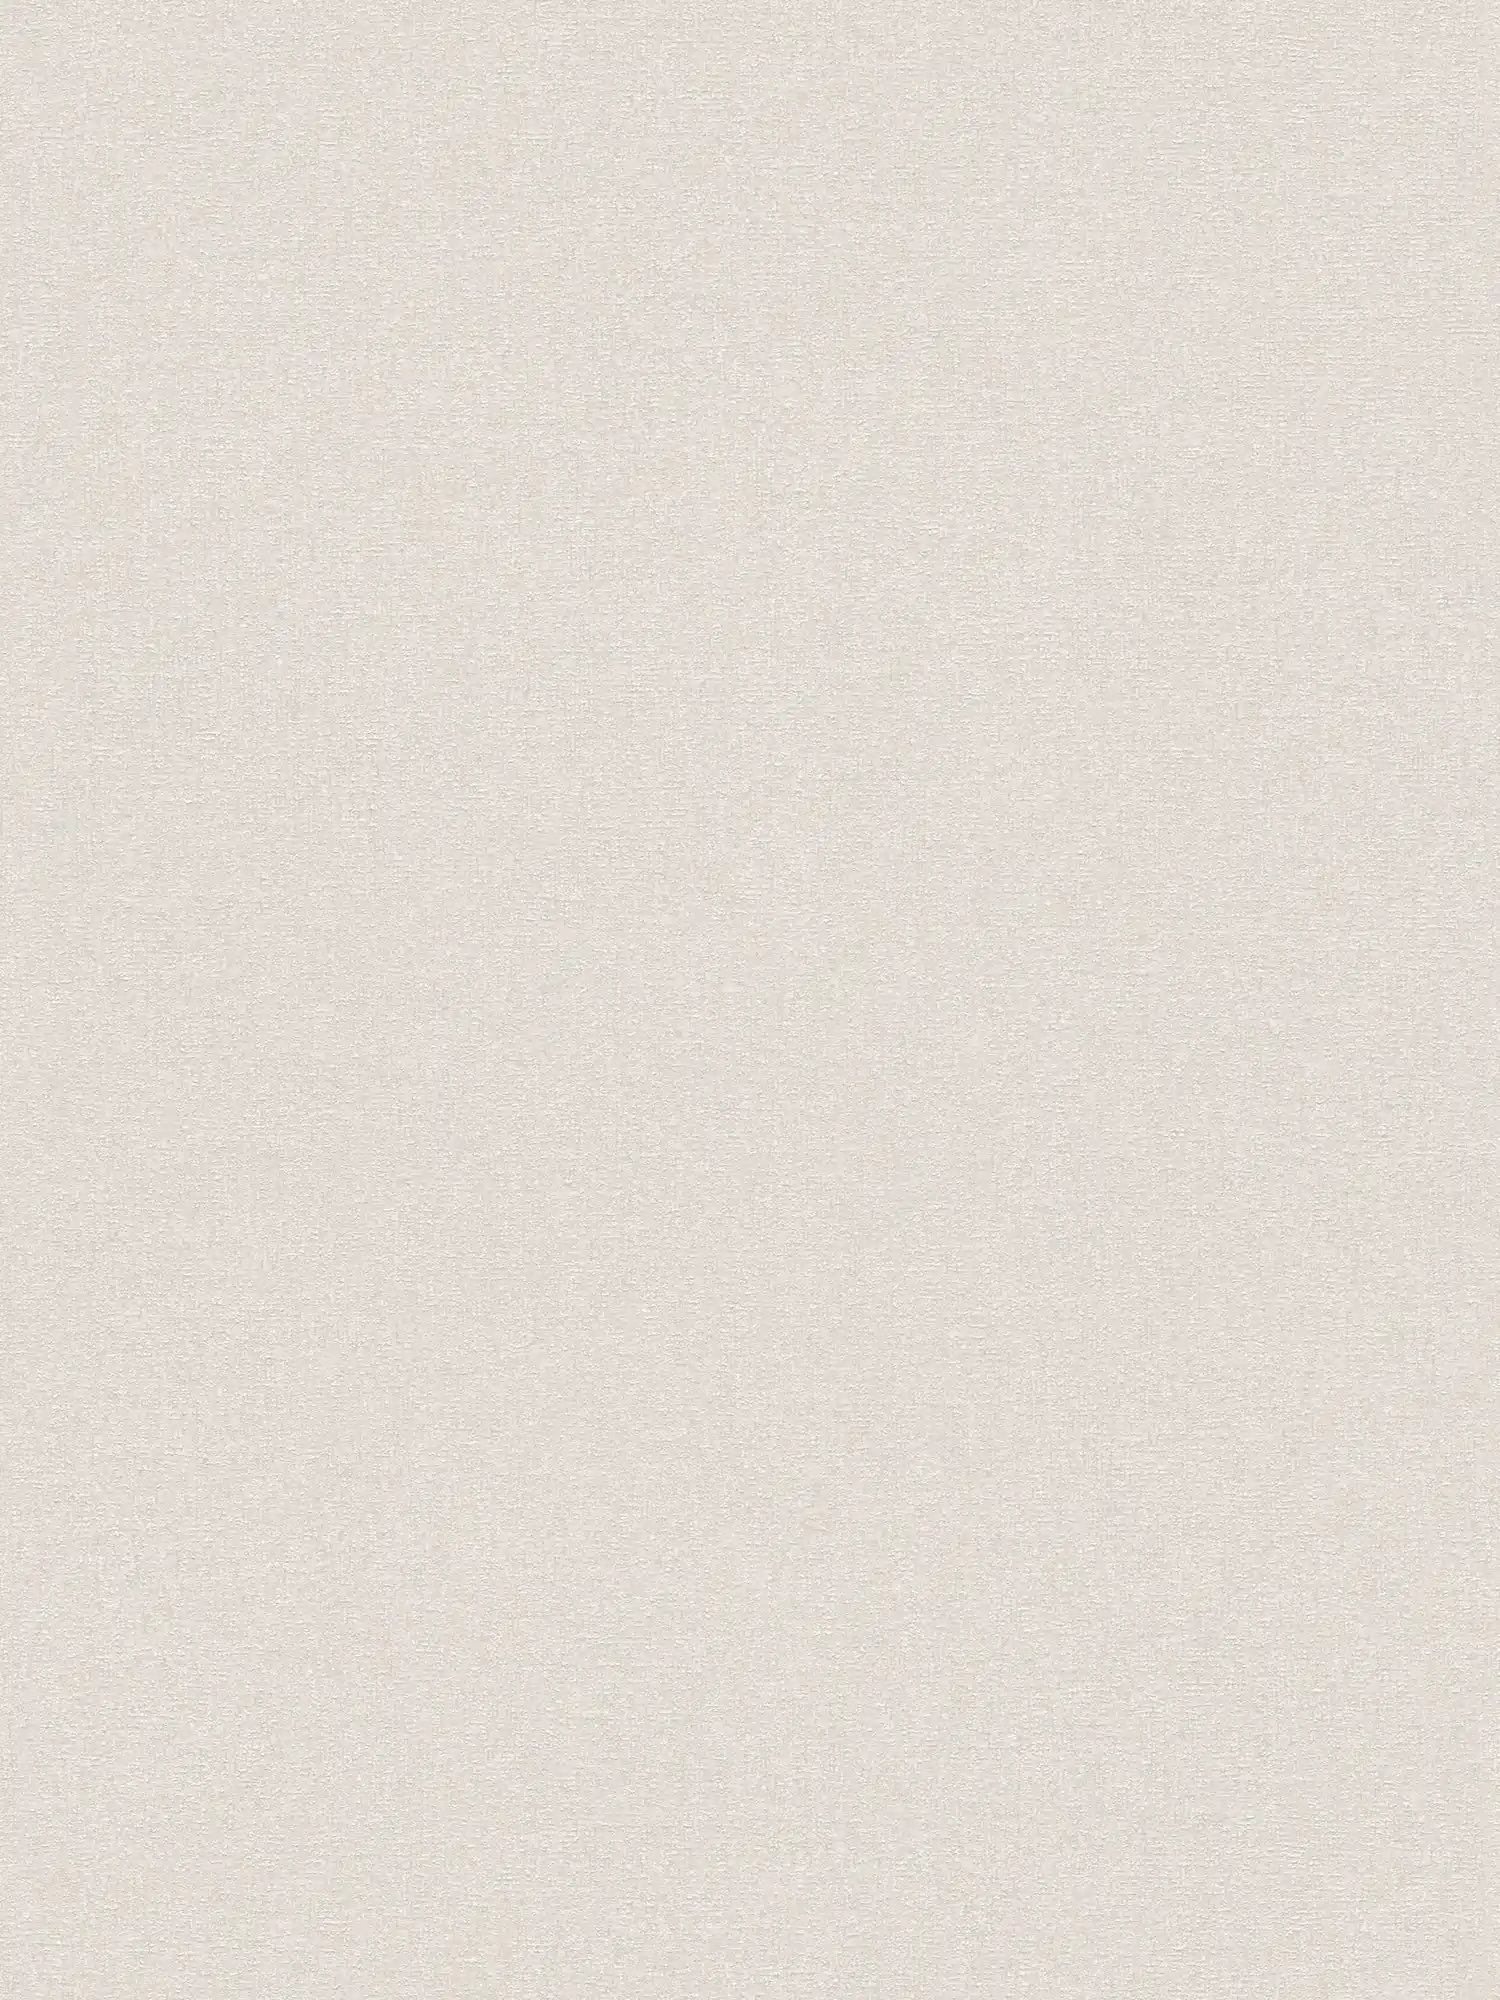 Non-woven wallpaper with fine structure - cream, white, grey
